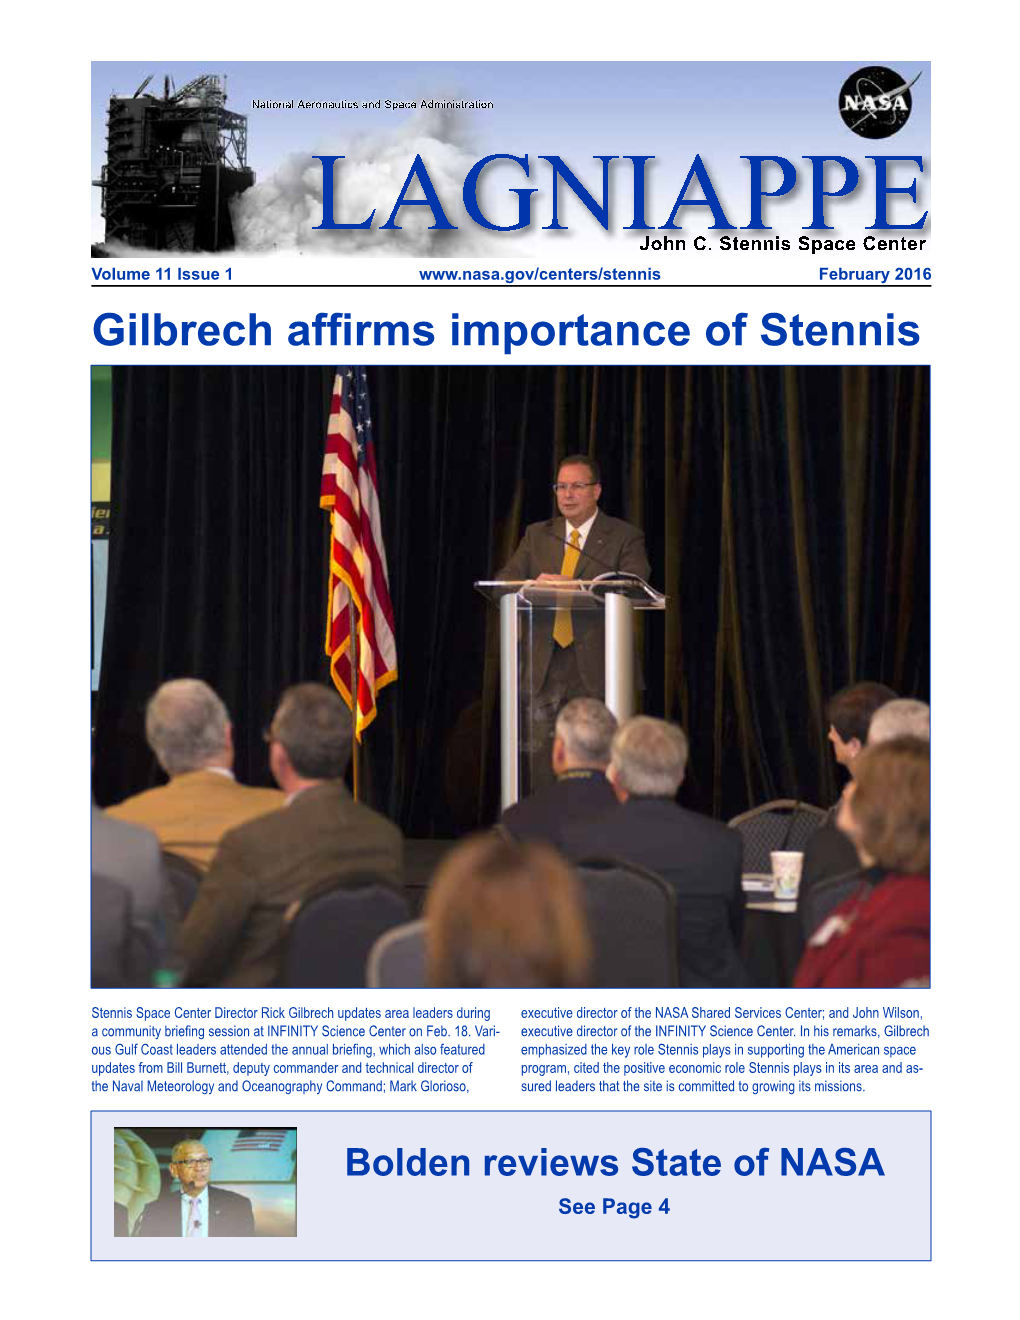 Gilbrech Affirms Importance of Stennis